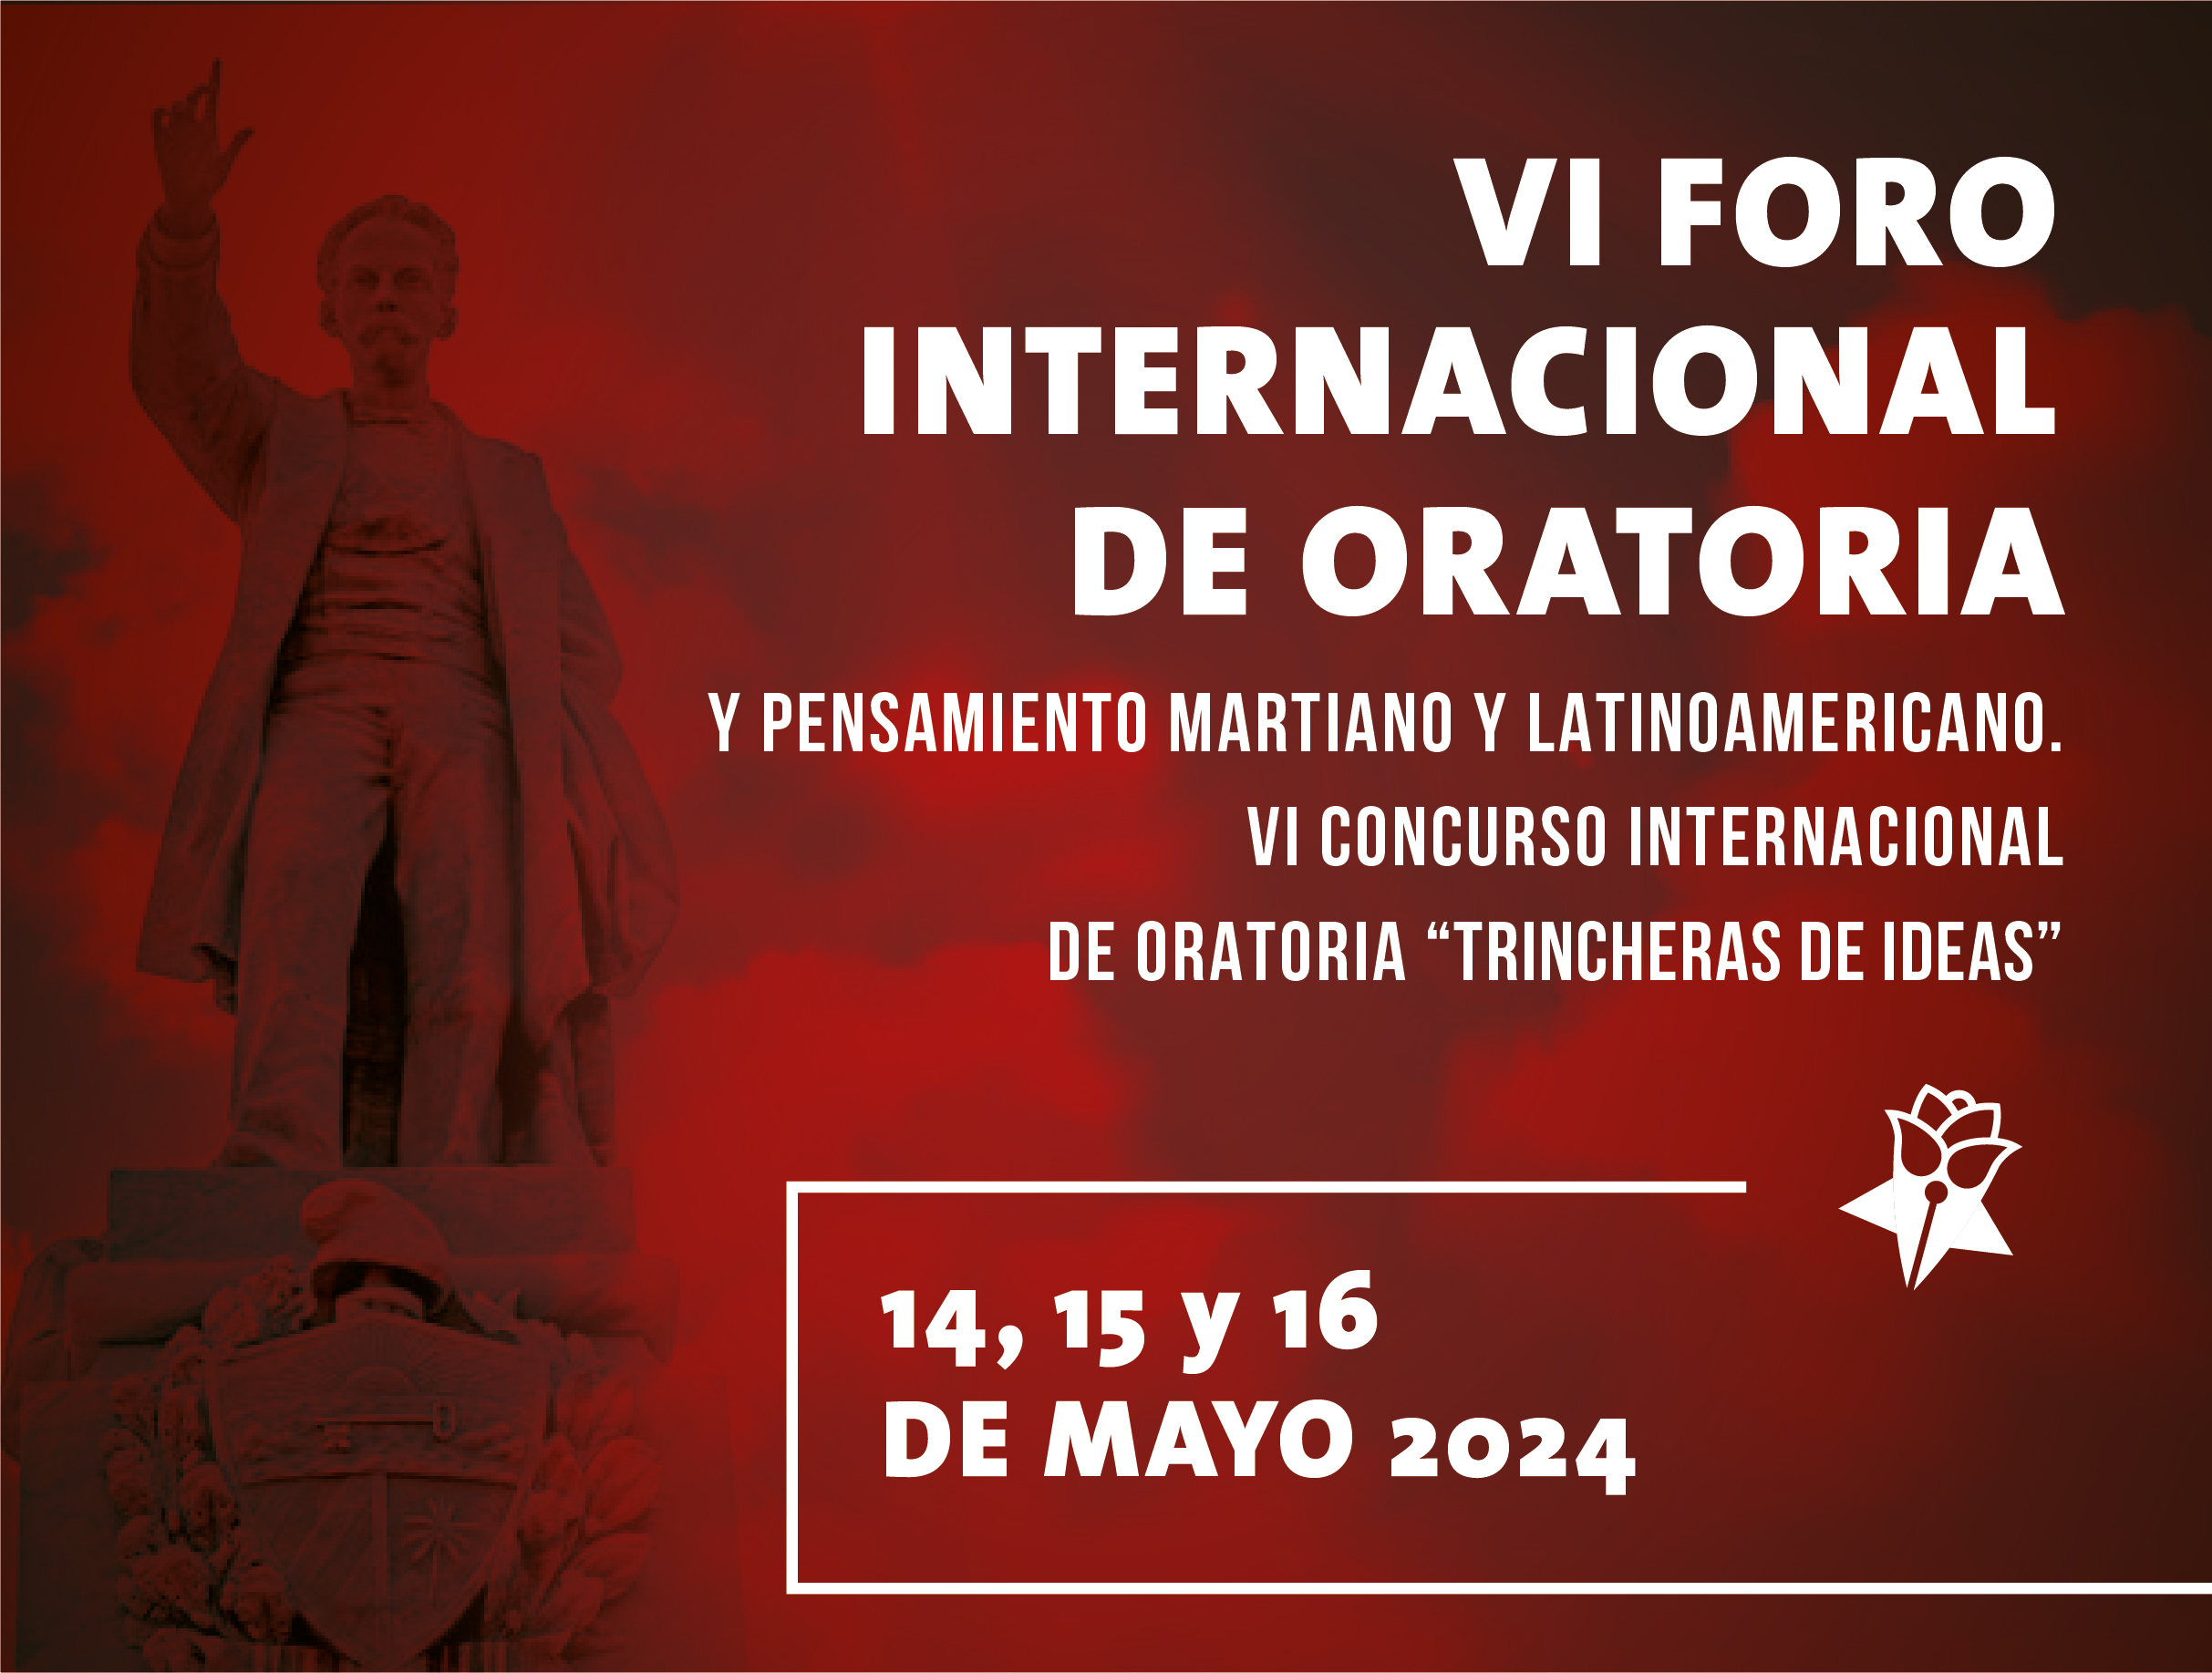 Eventos en Cuba - VI Foro Internacional de Oratoria, Pensamiento Martiano y Latinoamericano y VI Concurso Internacional de Oratoria 'Trincheras de Ideas 2024'